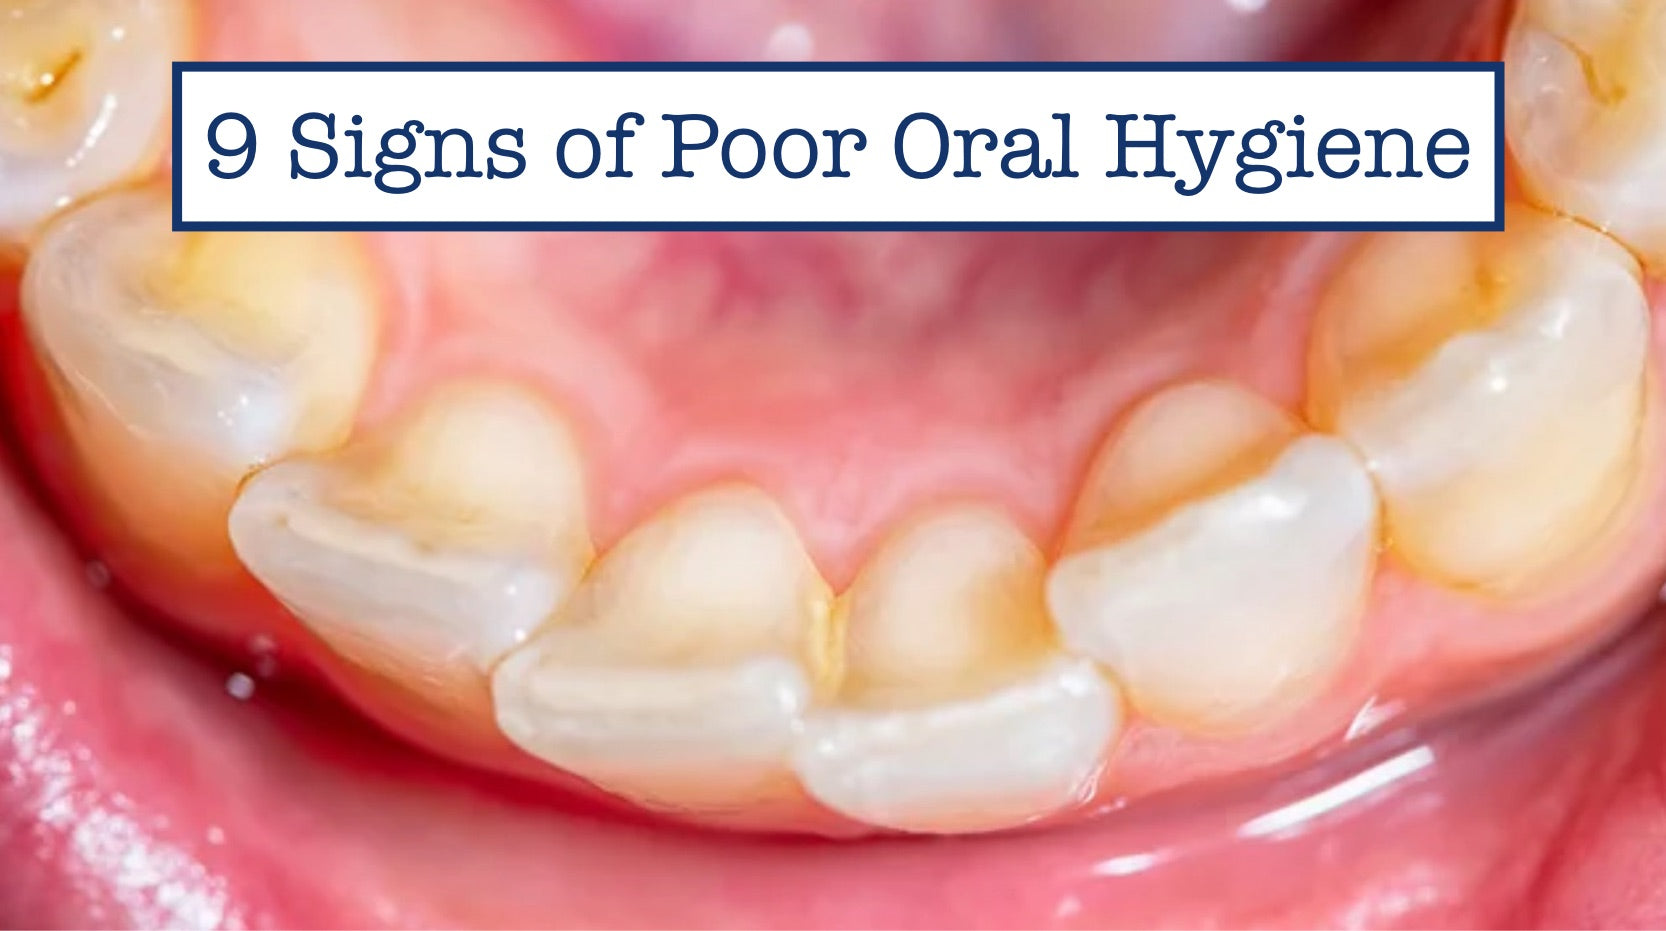 9 Signs of Poor Oral Hygiene